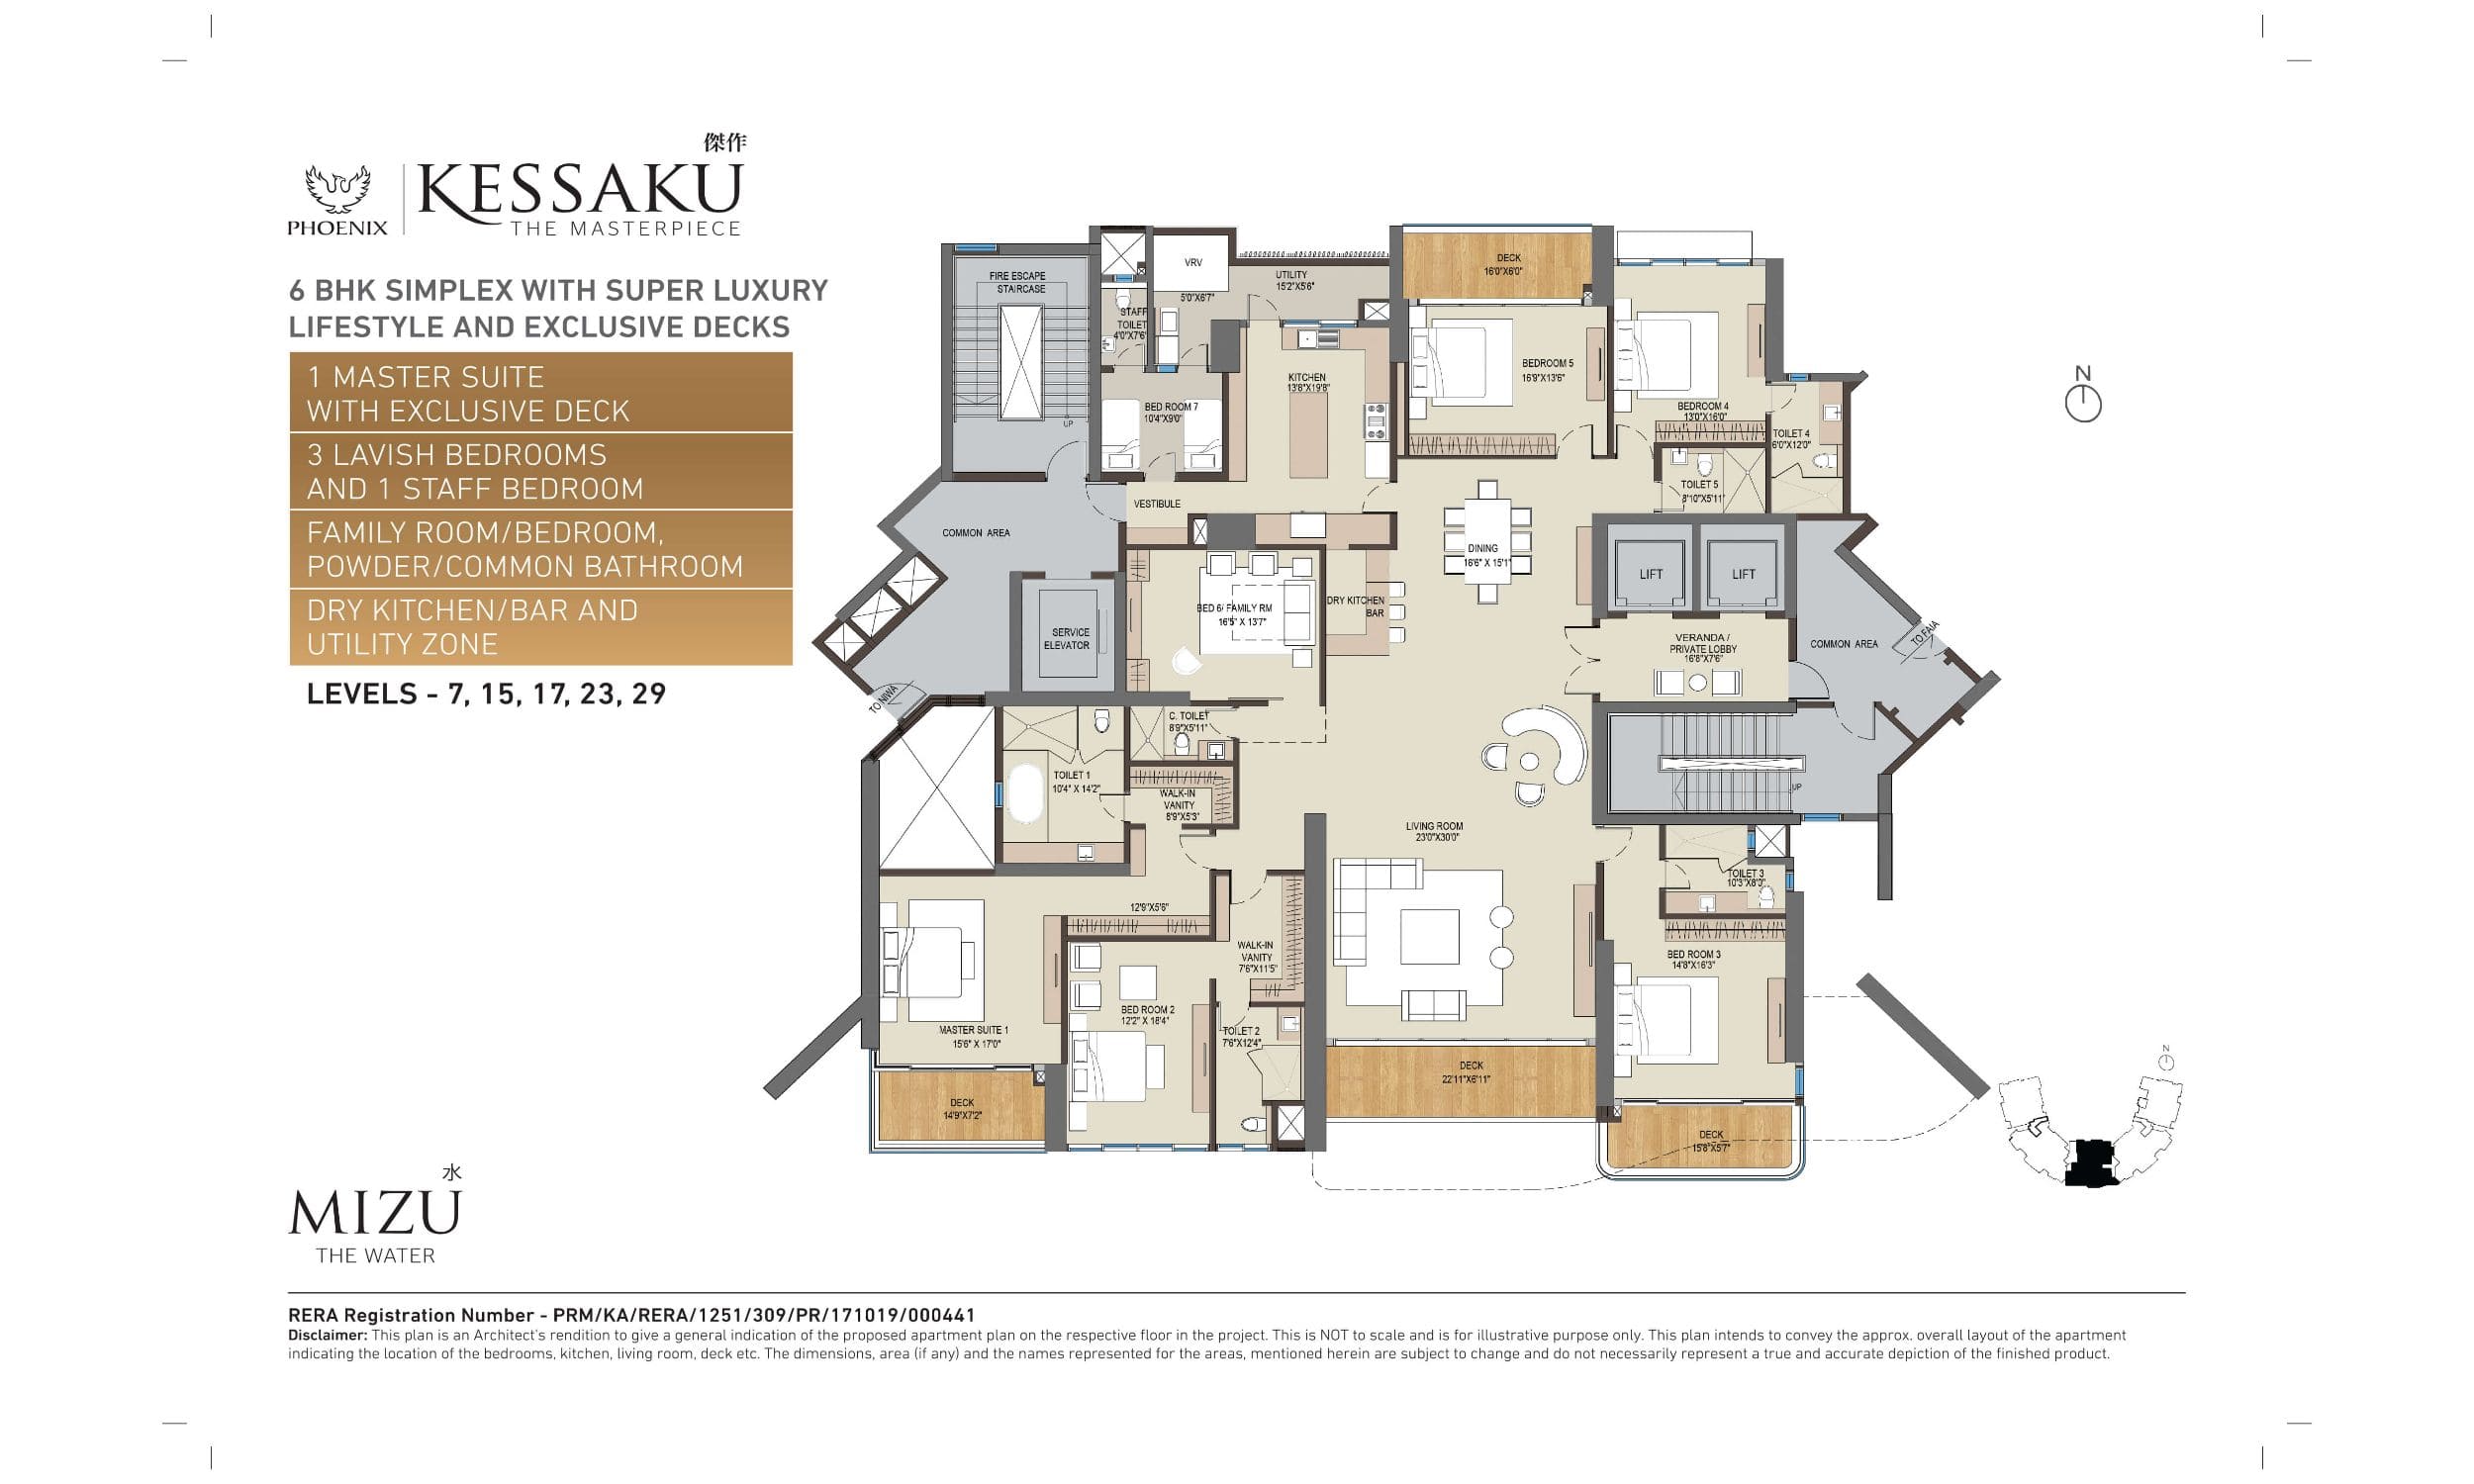 Phoenix Kessaku MIZU Floor Plans (4)